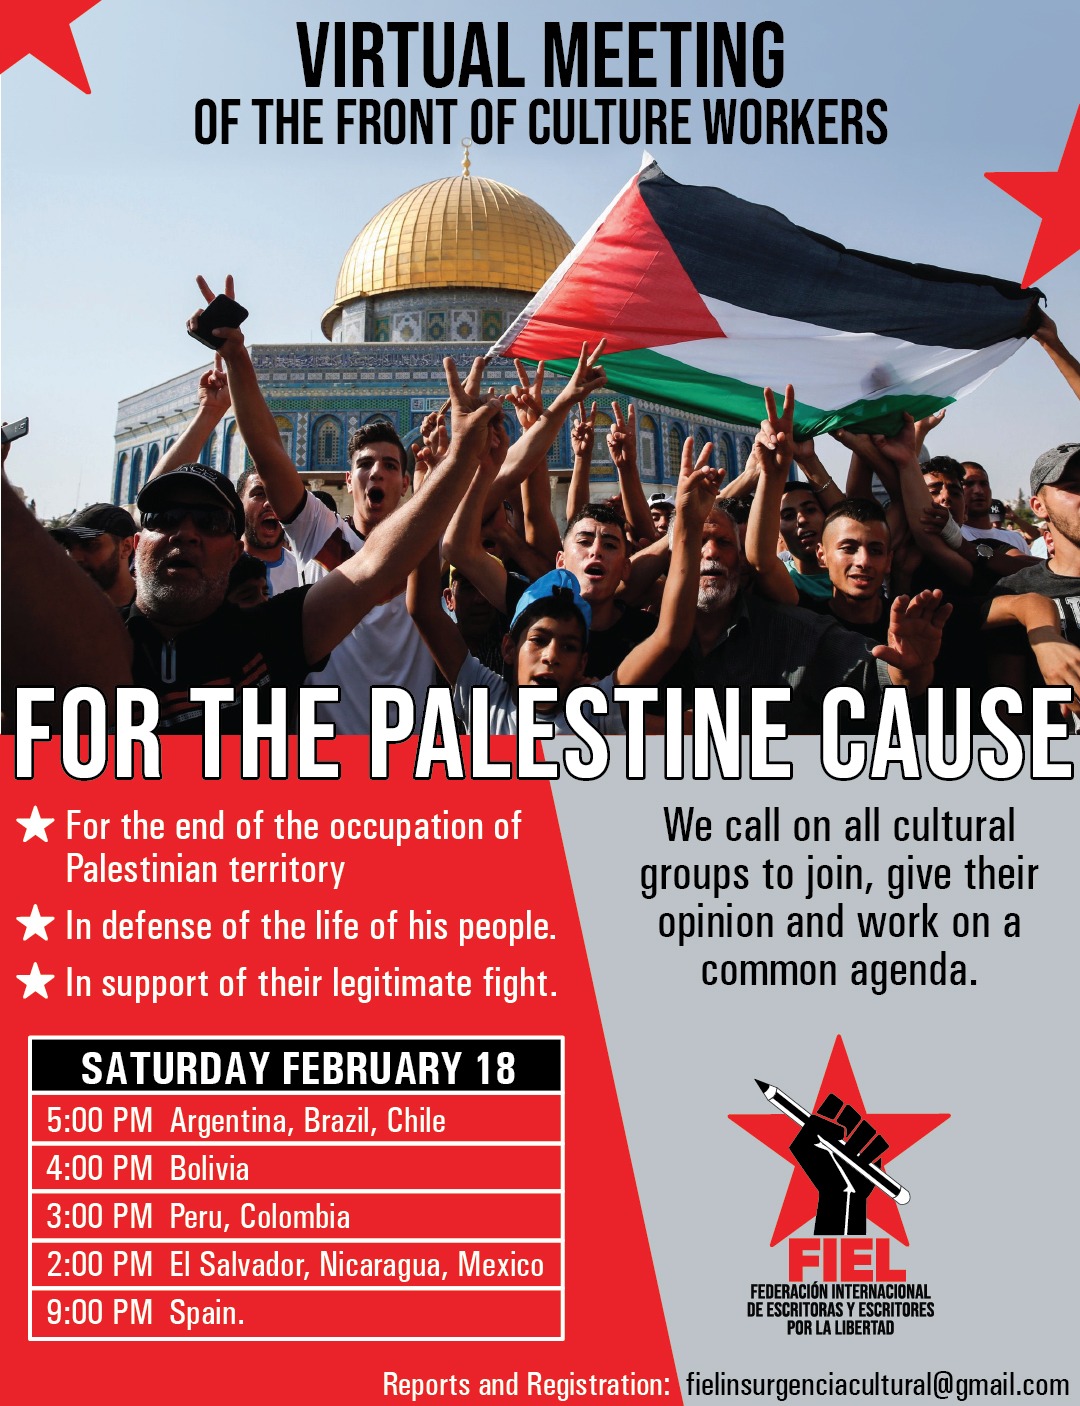 دعوة نشطاء الثقافة حول العالم لاجتماع افتراضي أجل قضية فلسطين